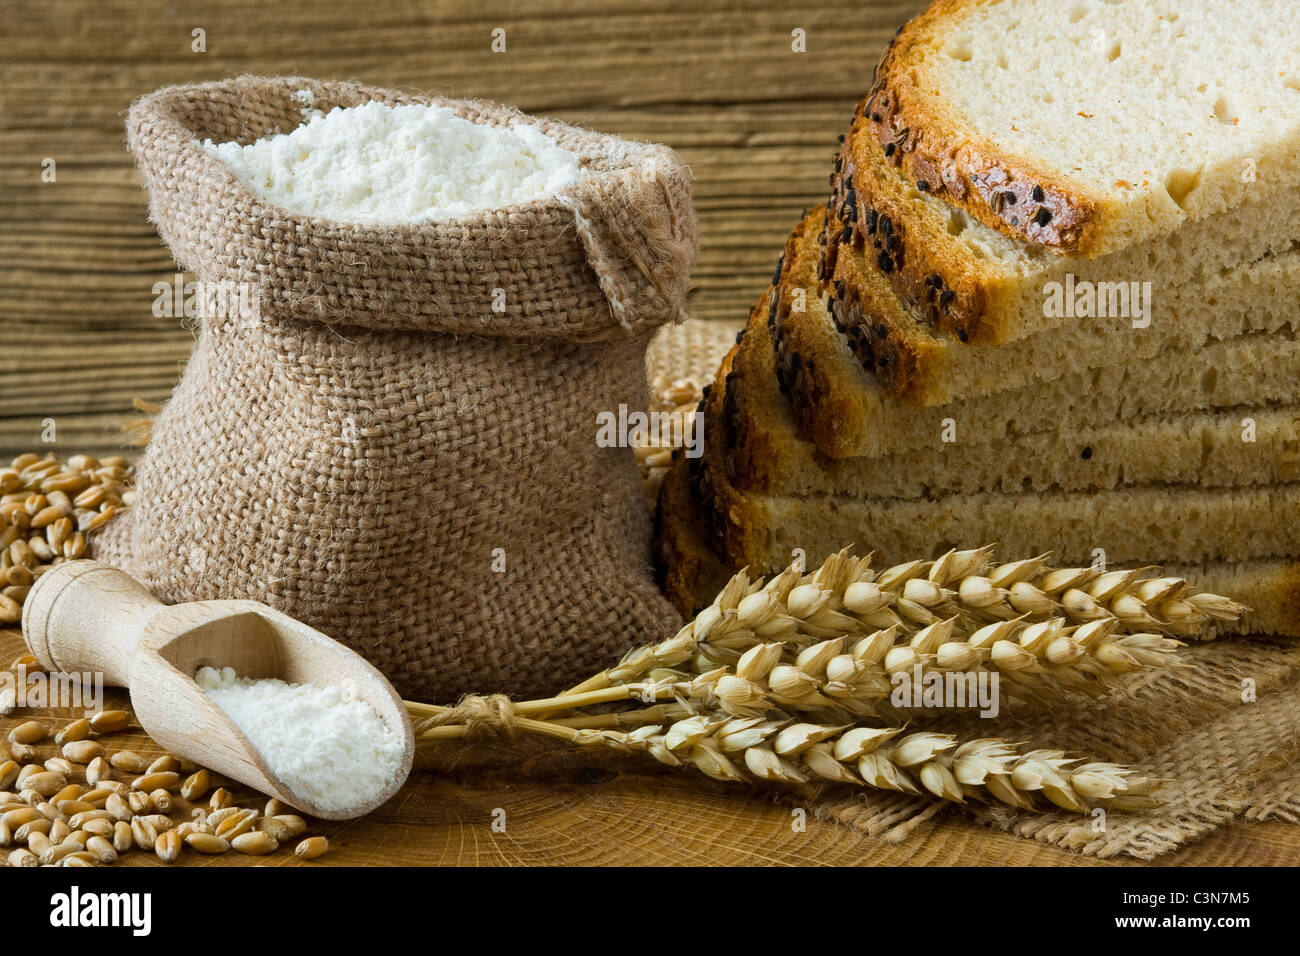 Du pain frais et de la farine dans de petits sac de toile Banque D'Images